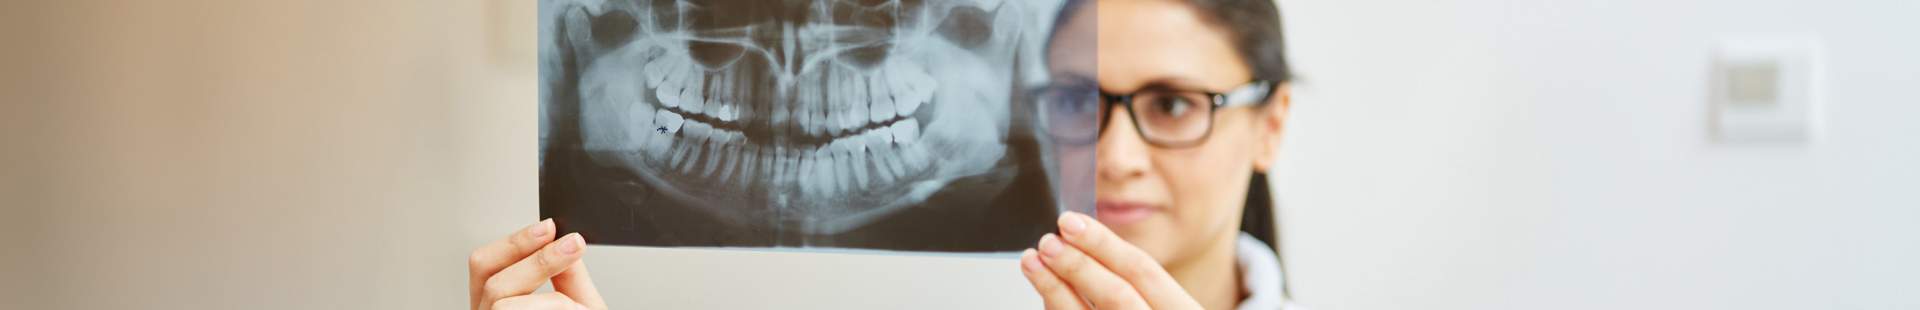 Zahnärztin schaut sich Röntgenbild an